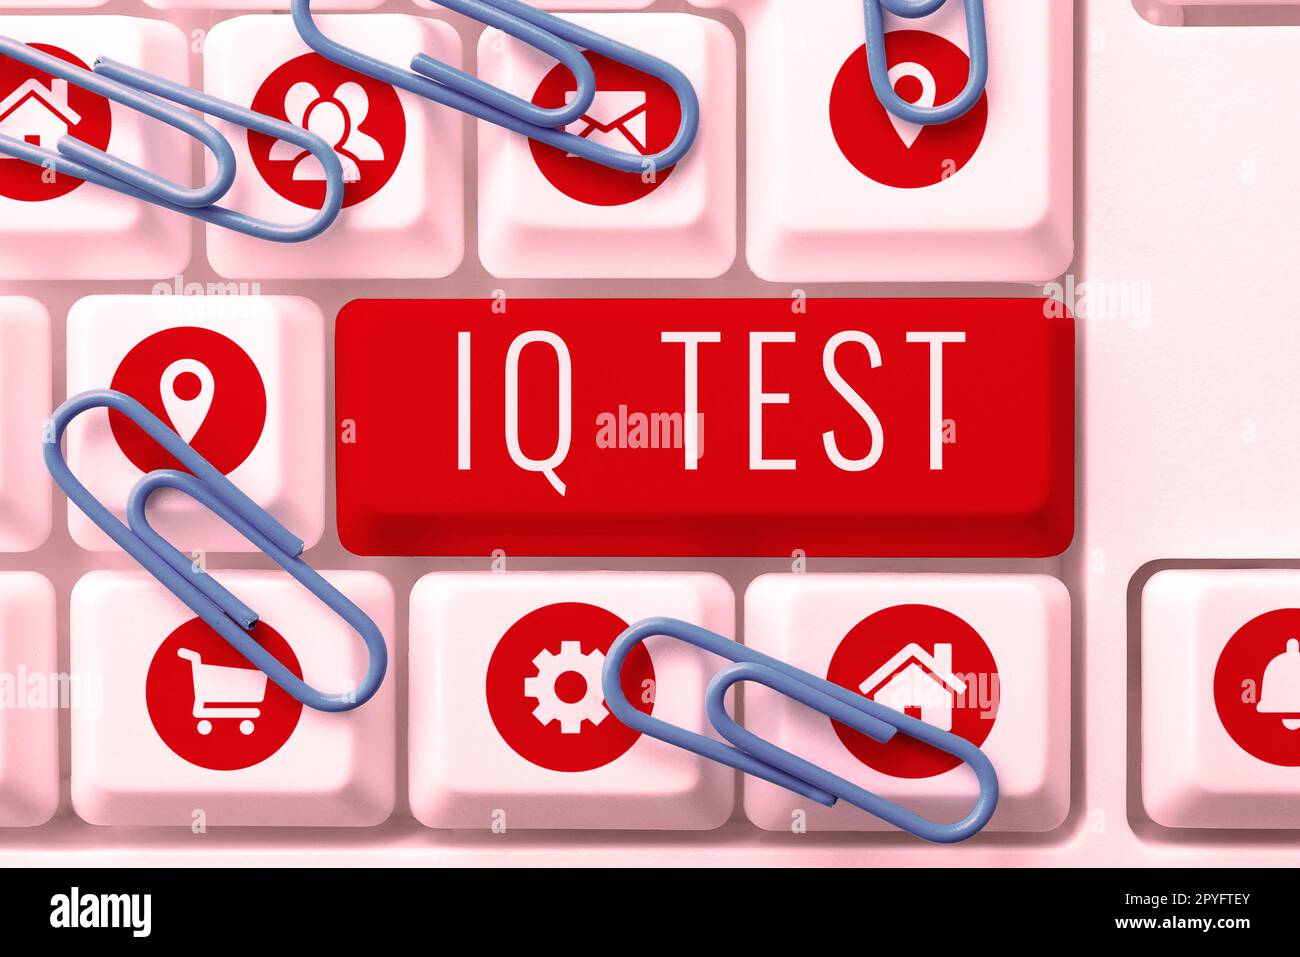 Handgeschriebenes Schild IQ Test. Konzept bedeutet Versuch, deine kognitiven Fähigkeiten zu messen, menschliche Intelligenz zu beurteilen Stockfoto